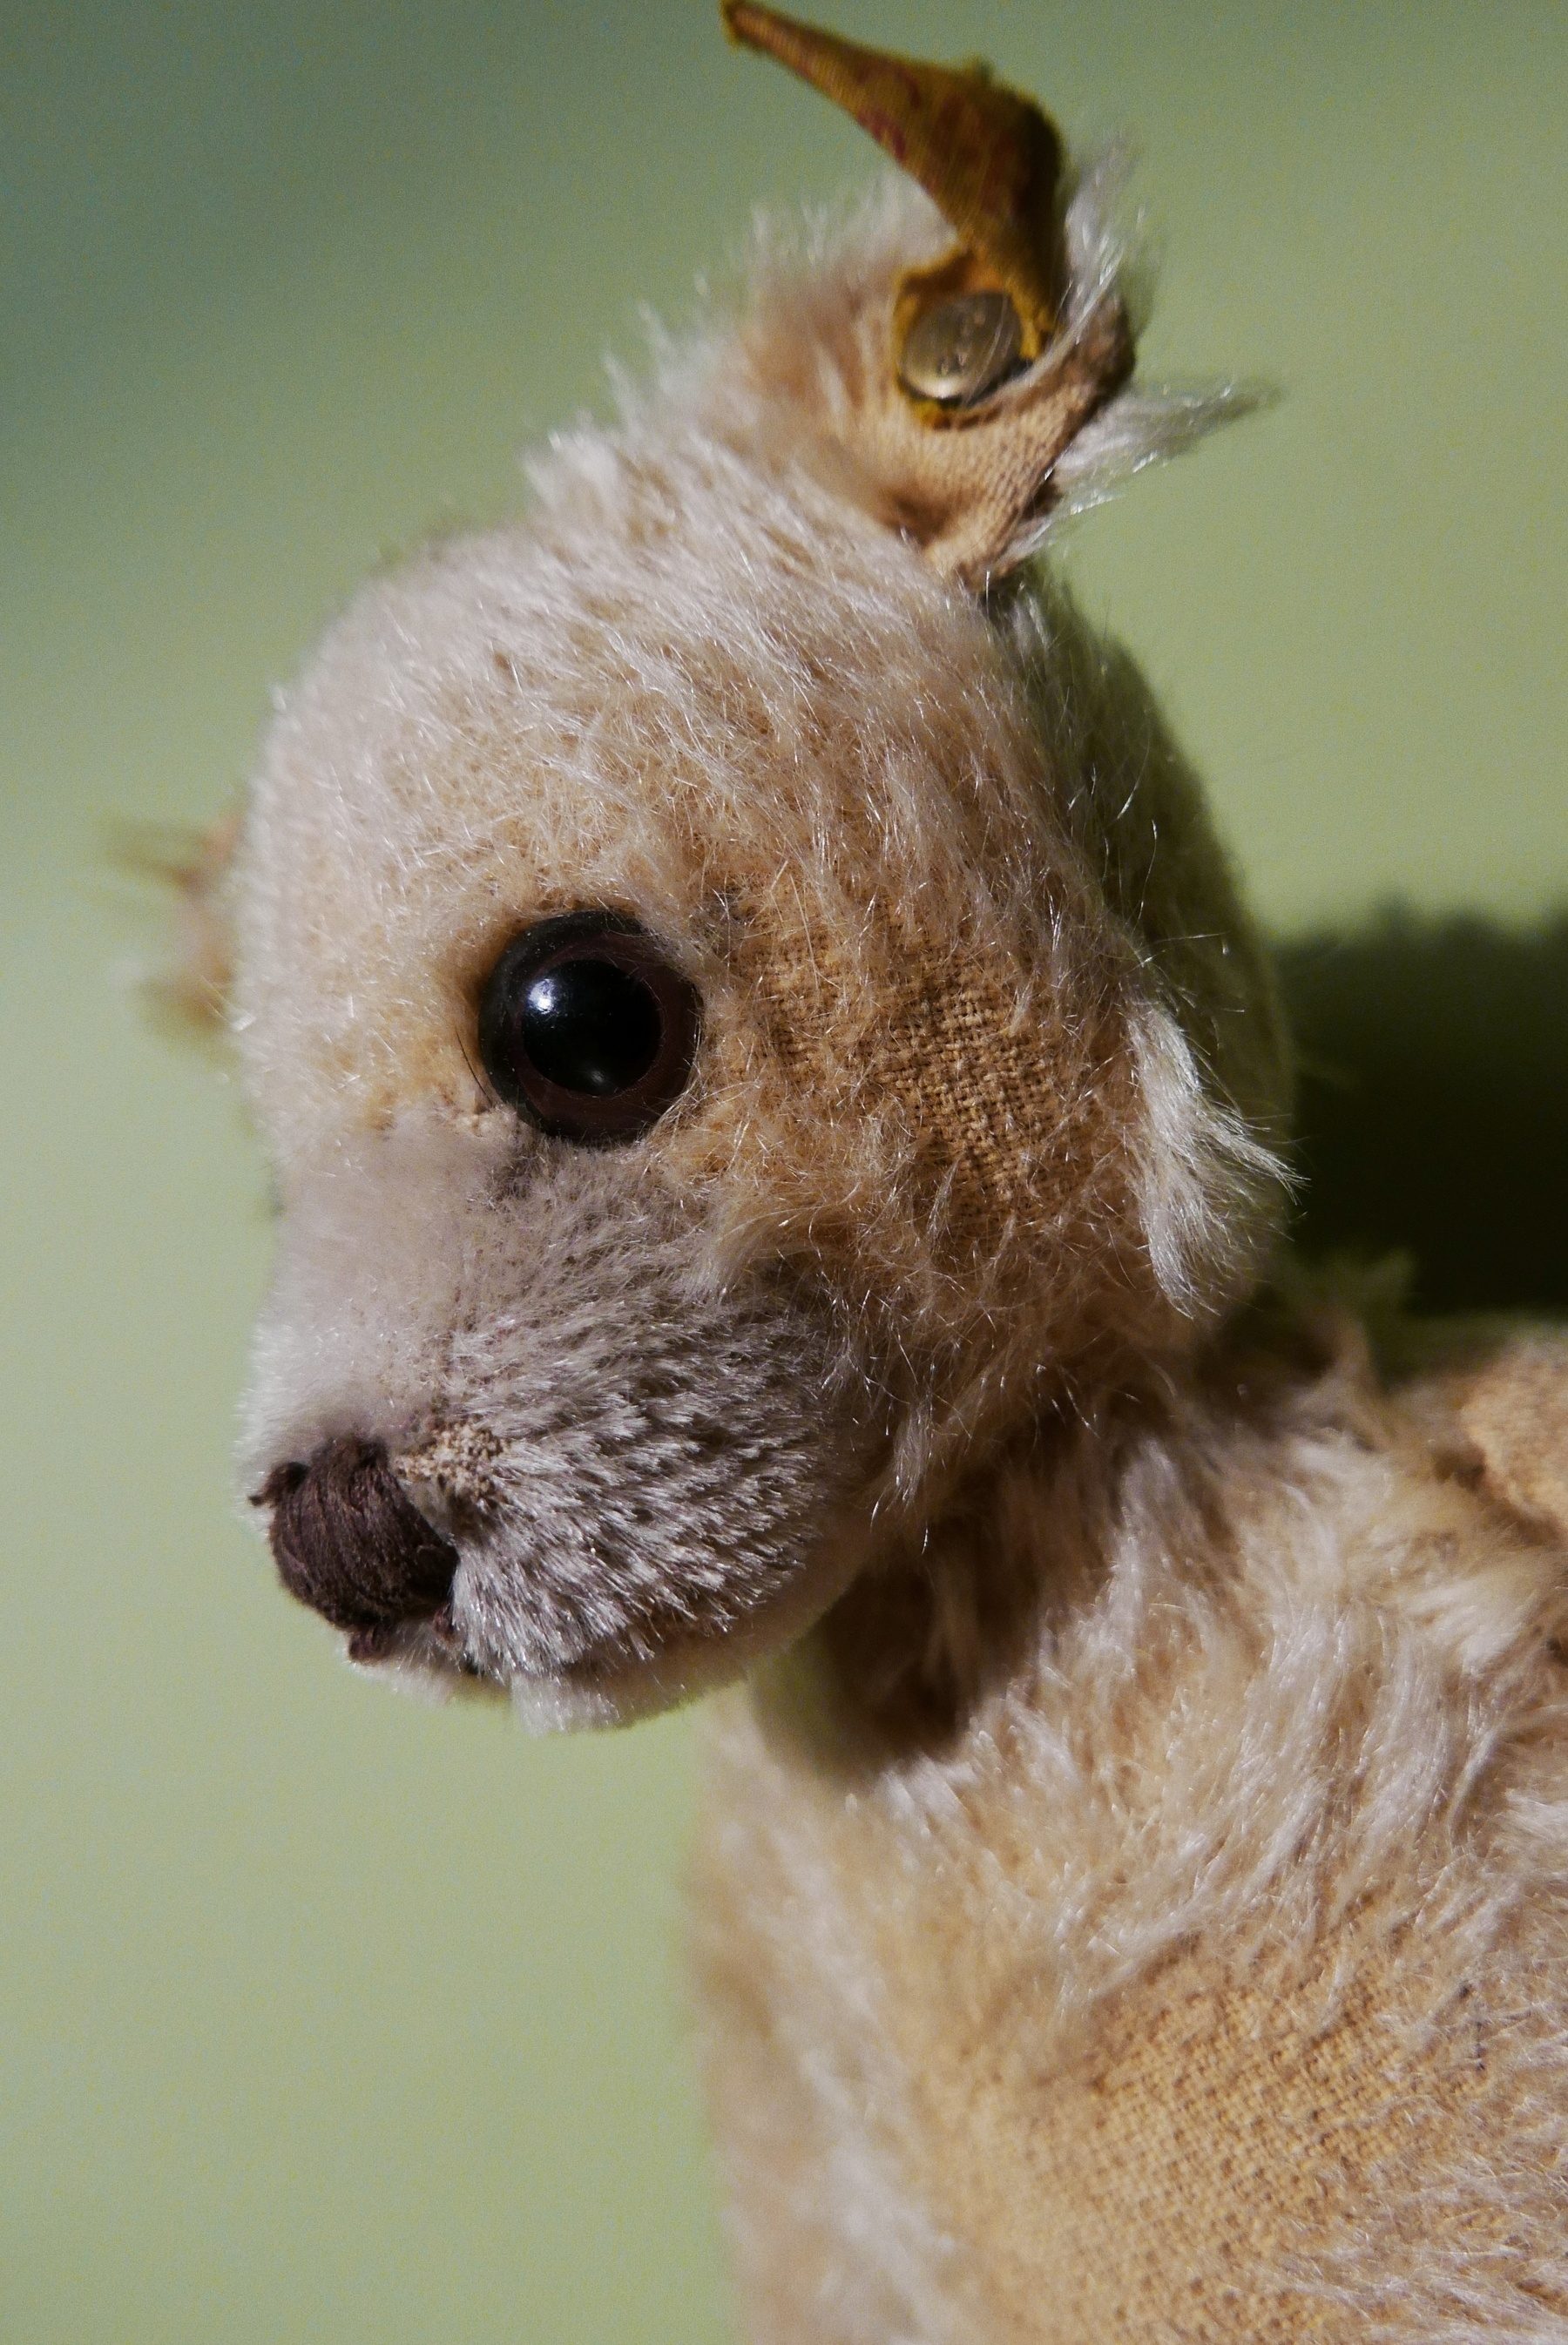 A close-up "portrait" of a well-worn Steiff  bear